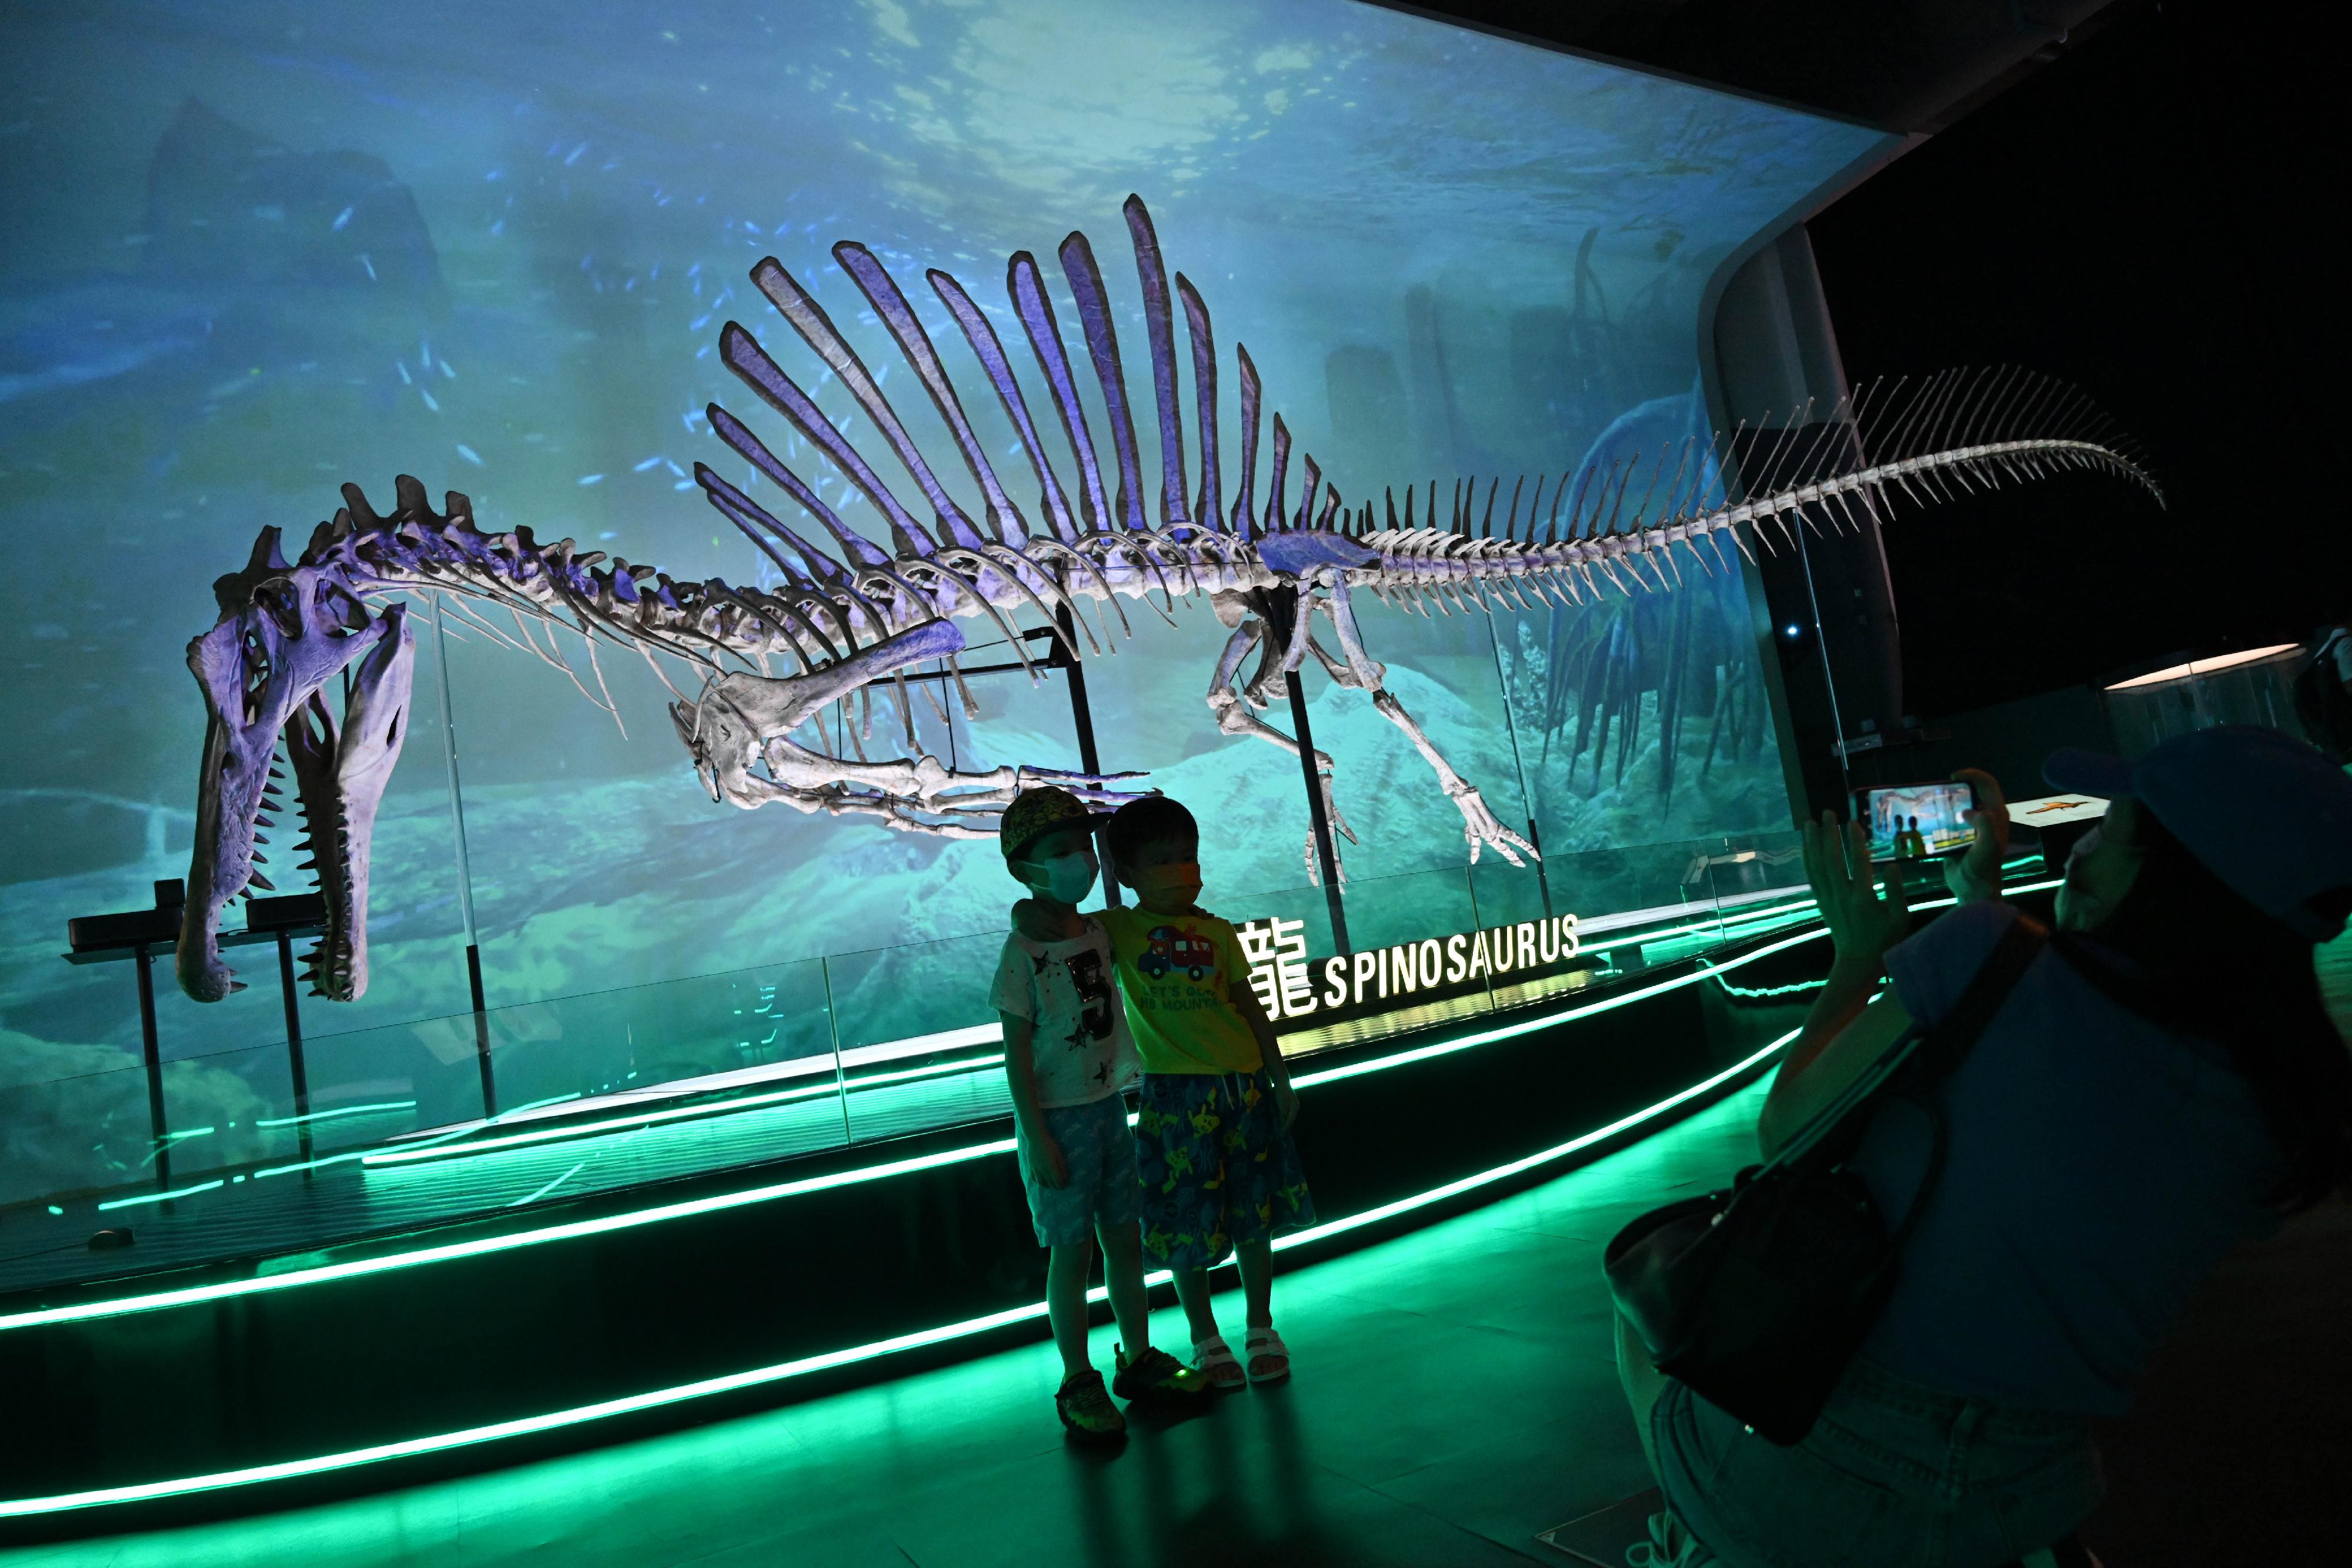 香港科學館的免費大型恐龍展覽「香港賽馬會呈獻系列：八大‧尋龍記」，自七月開展以來深受市民歡迎。圖示參觀者在展覽廳內的一比一復原棘龍骨架模型前拍照留念。